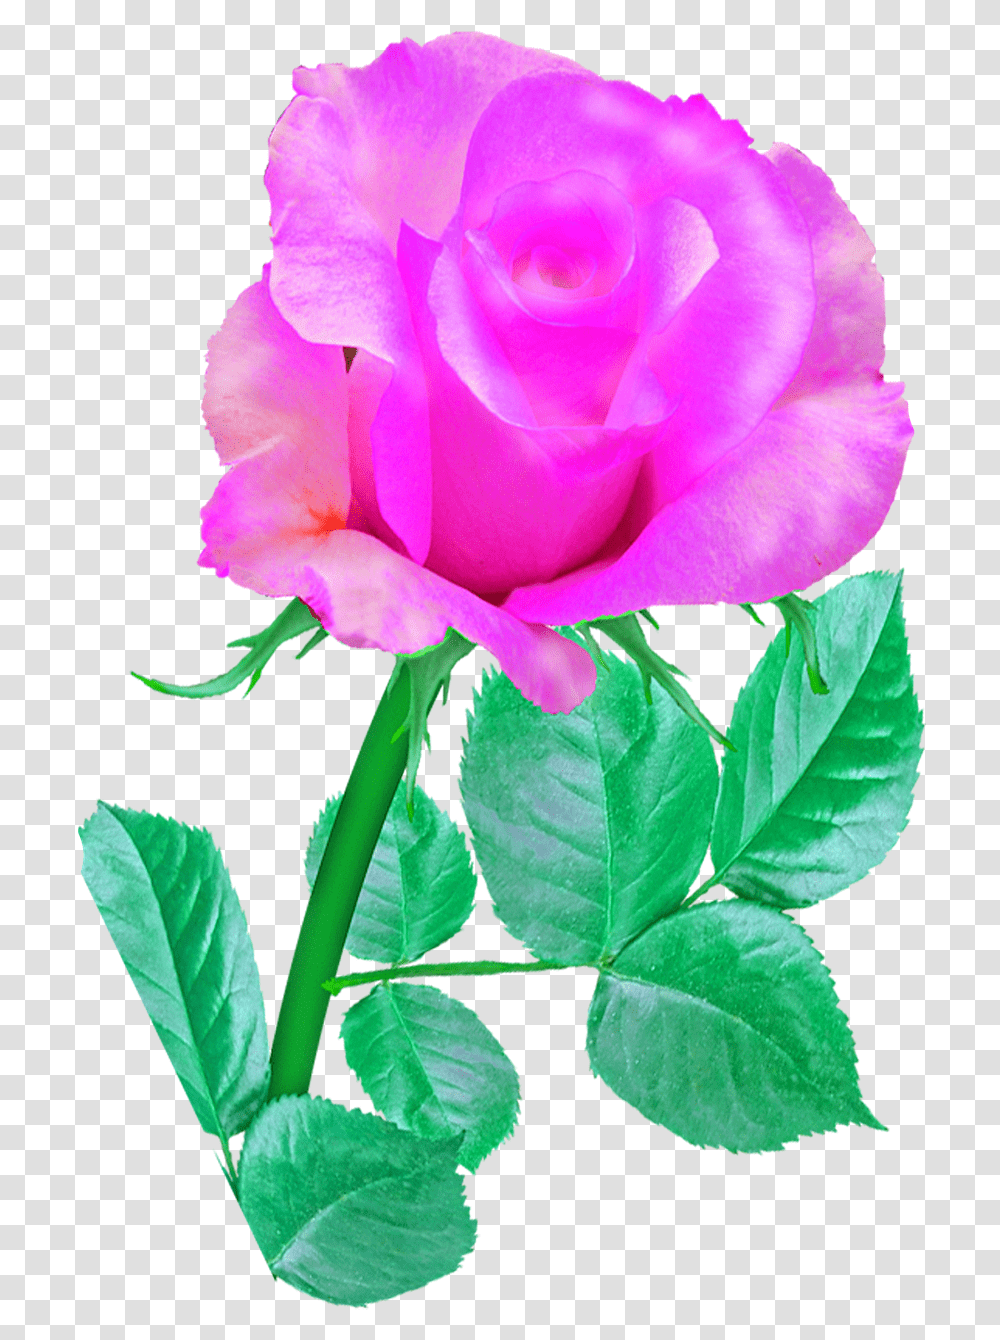 Pink Single Rose Rose Pink Flower Romance Blossom Rose Pink Single Flower, Plant, Petal, Vase, Jar Transparent Png